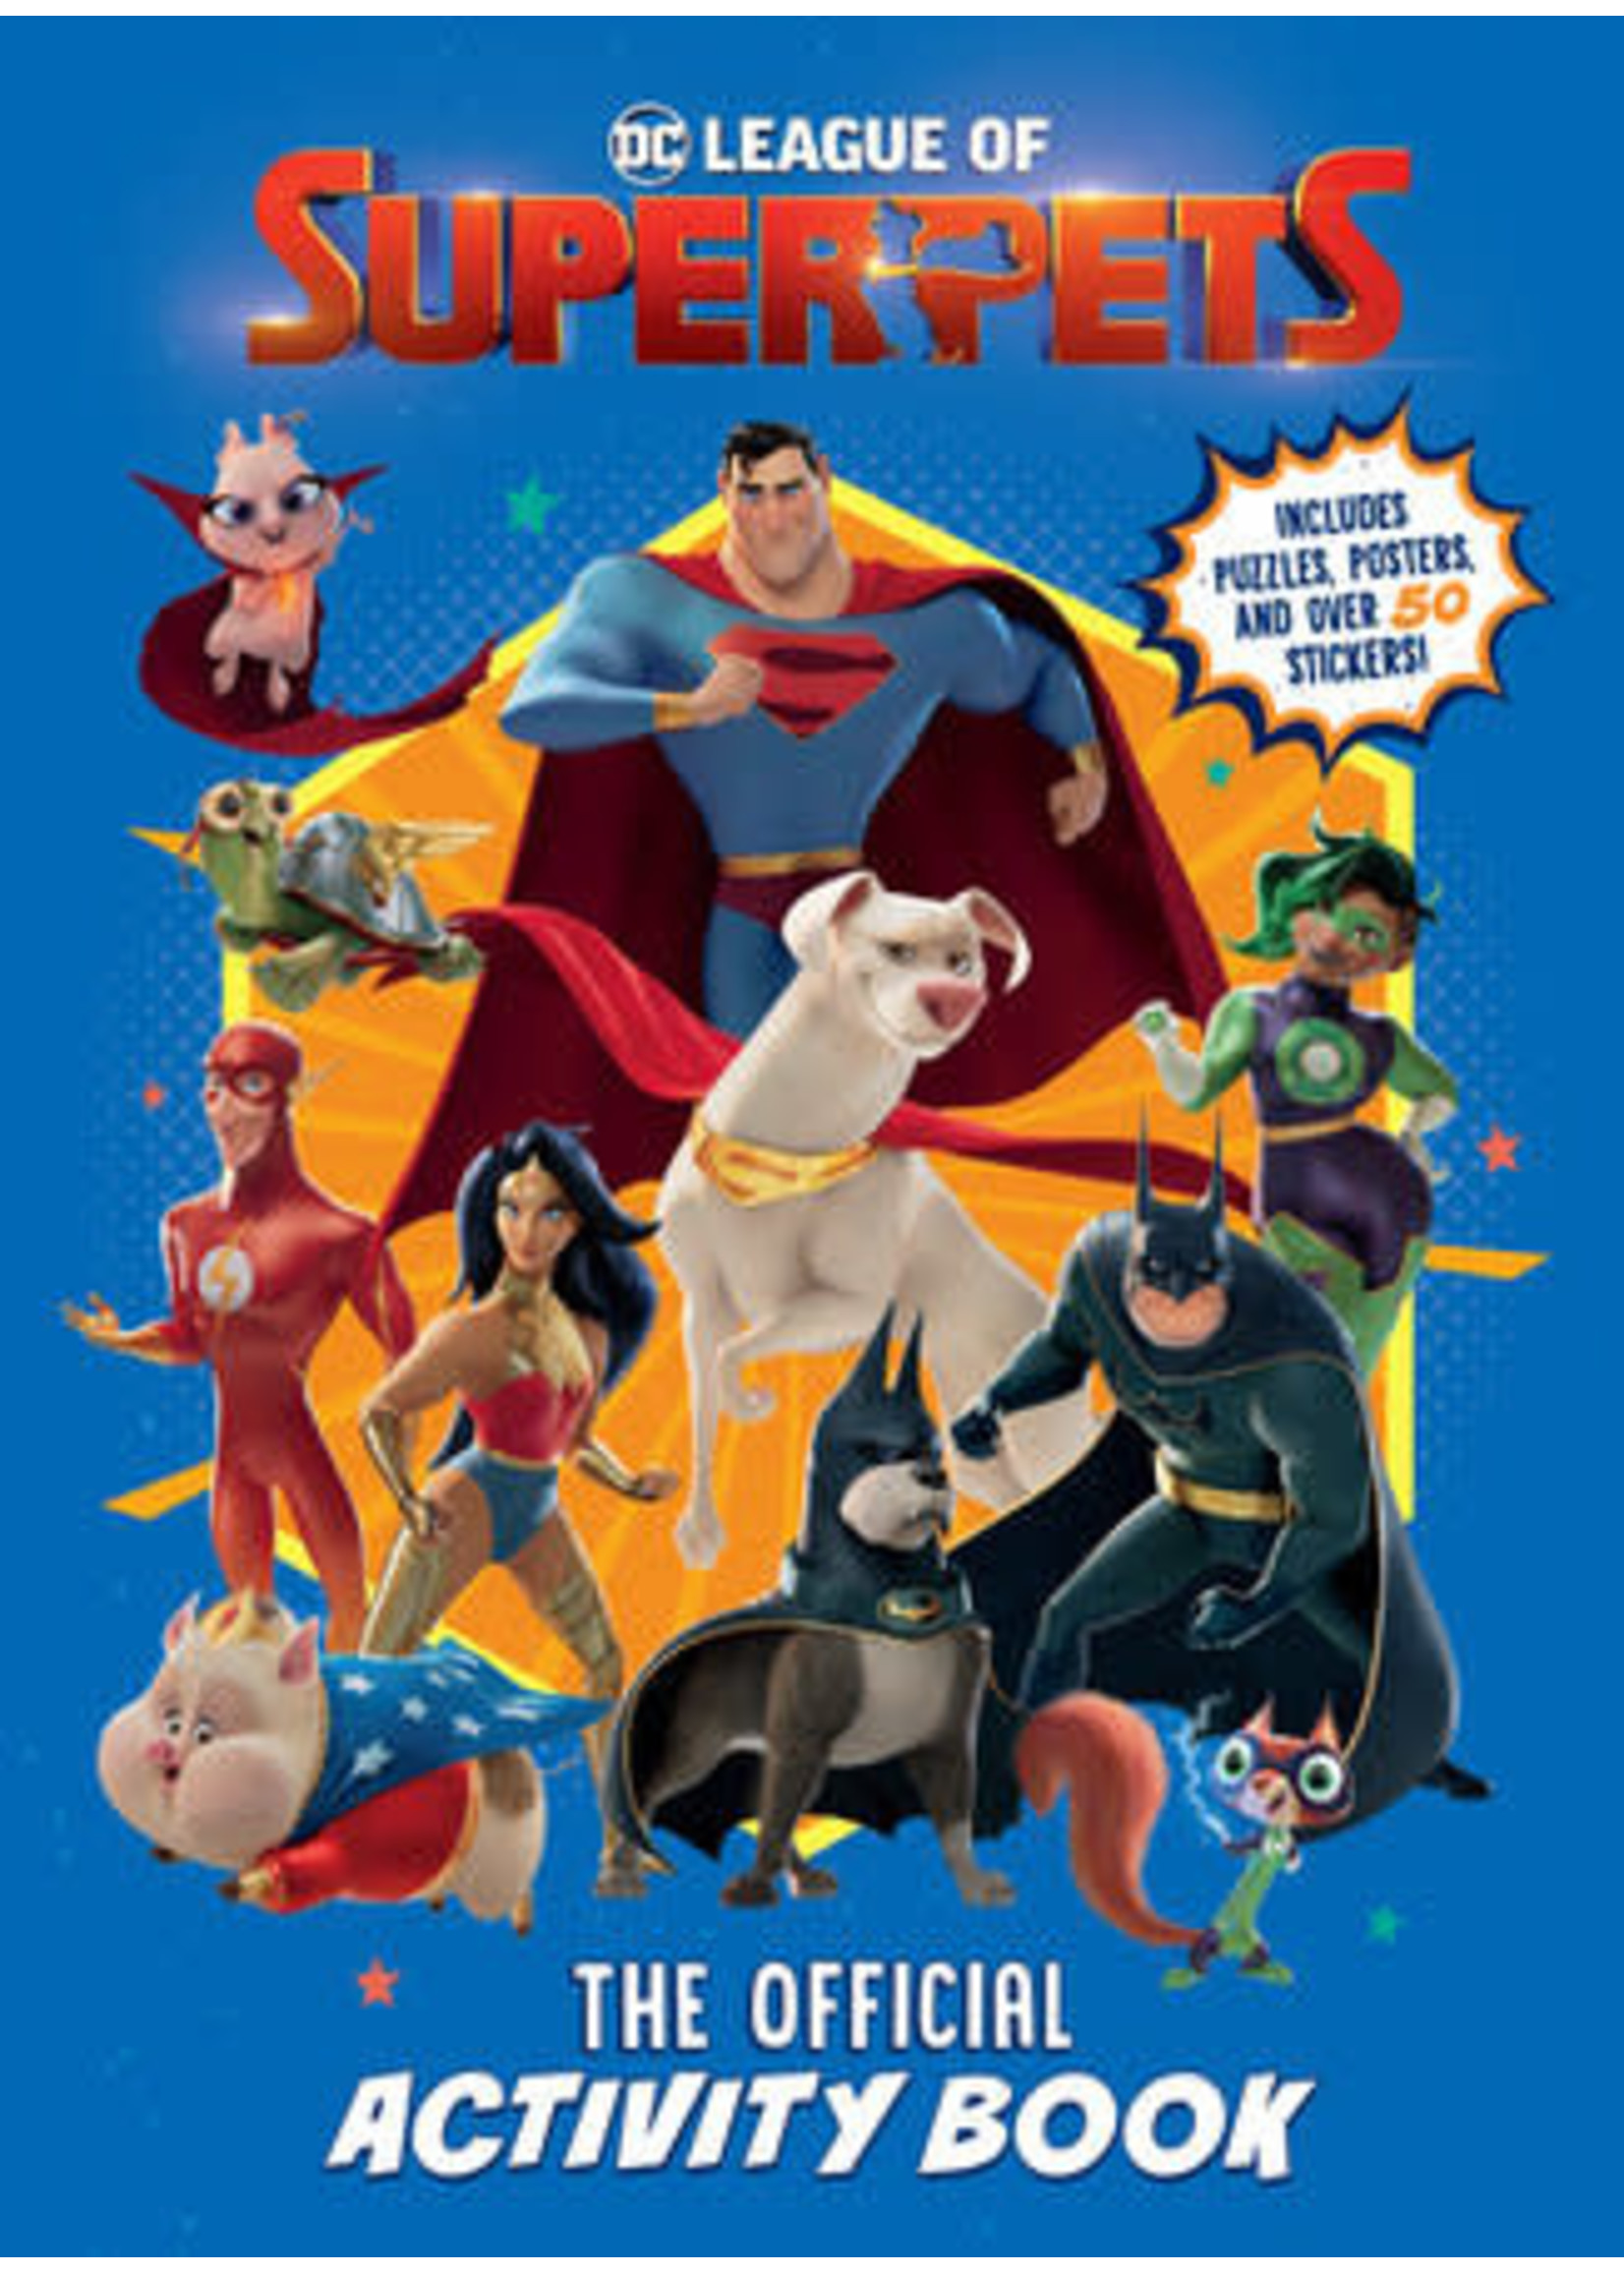 DC League Of Super-Pets: The Official Activity Book (Dc League Of Super-Pets Movie)